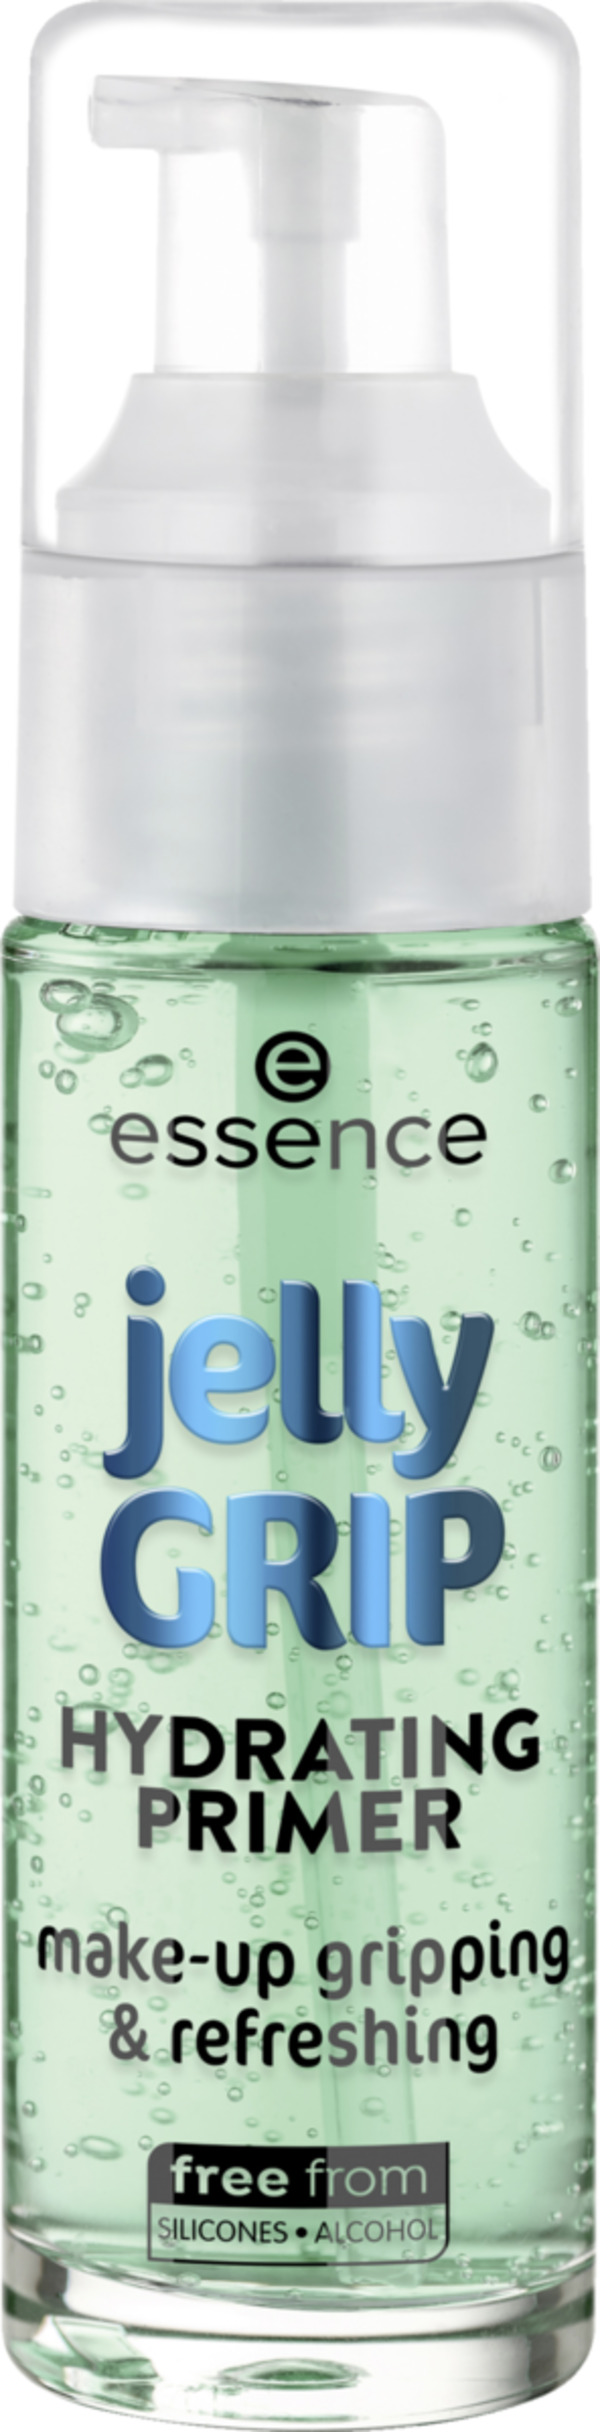 Bild 1 von essence jelly GRIP HYDRATING PRIMER